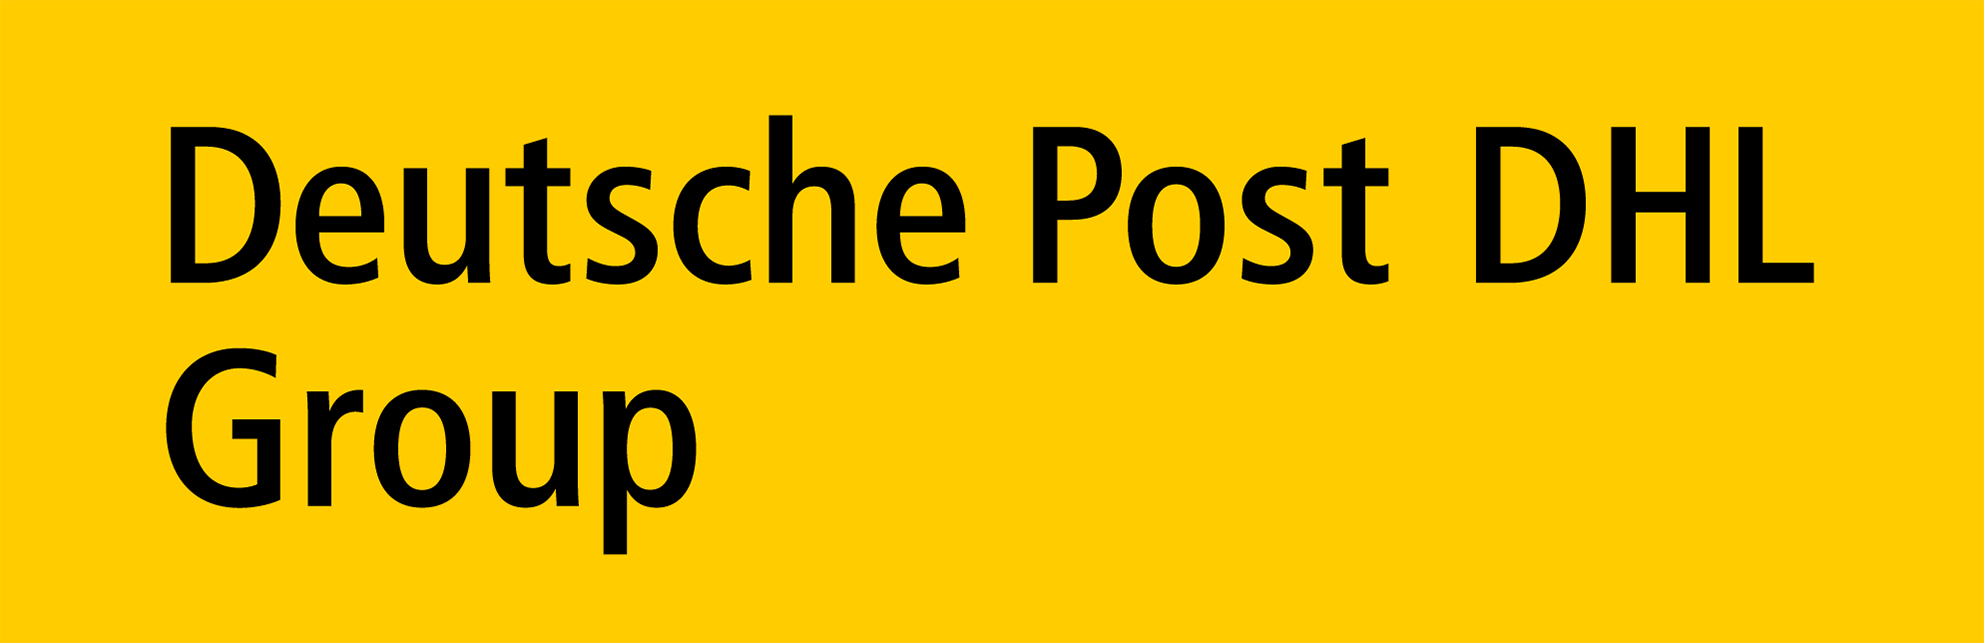 Deutsche Post Direkt GmbH